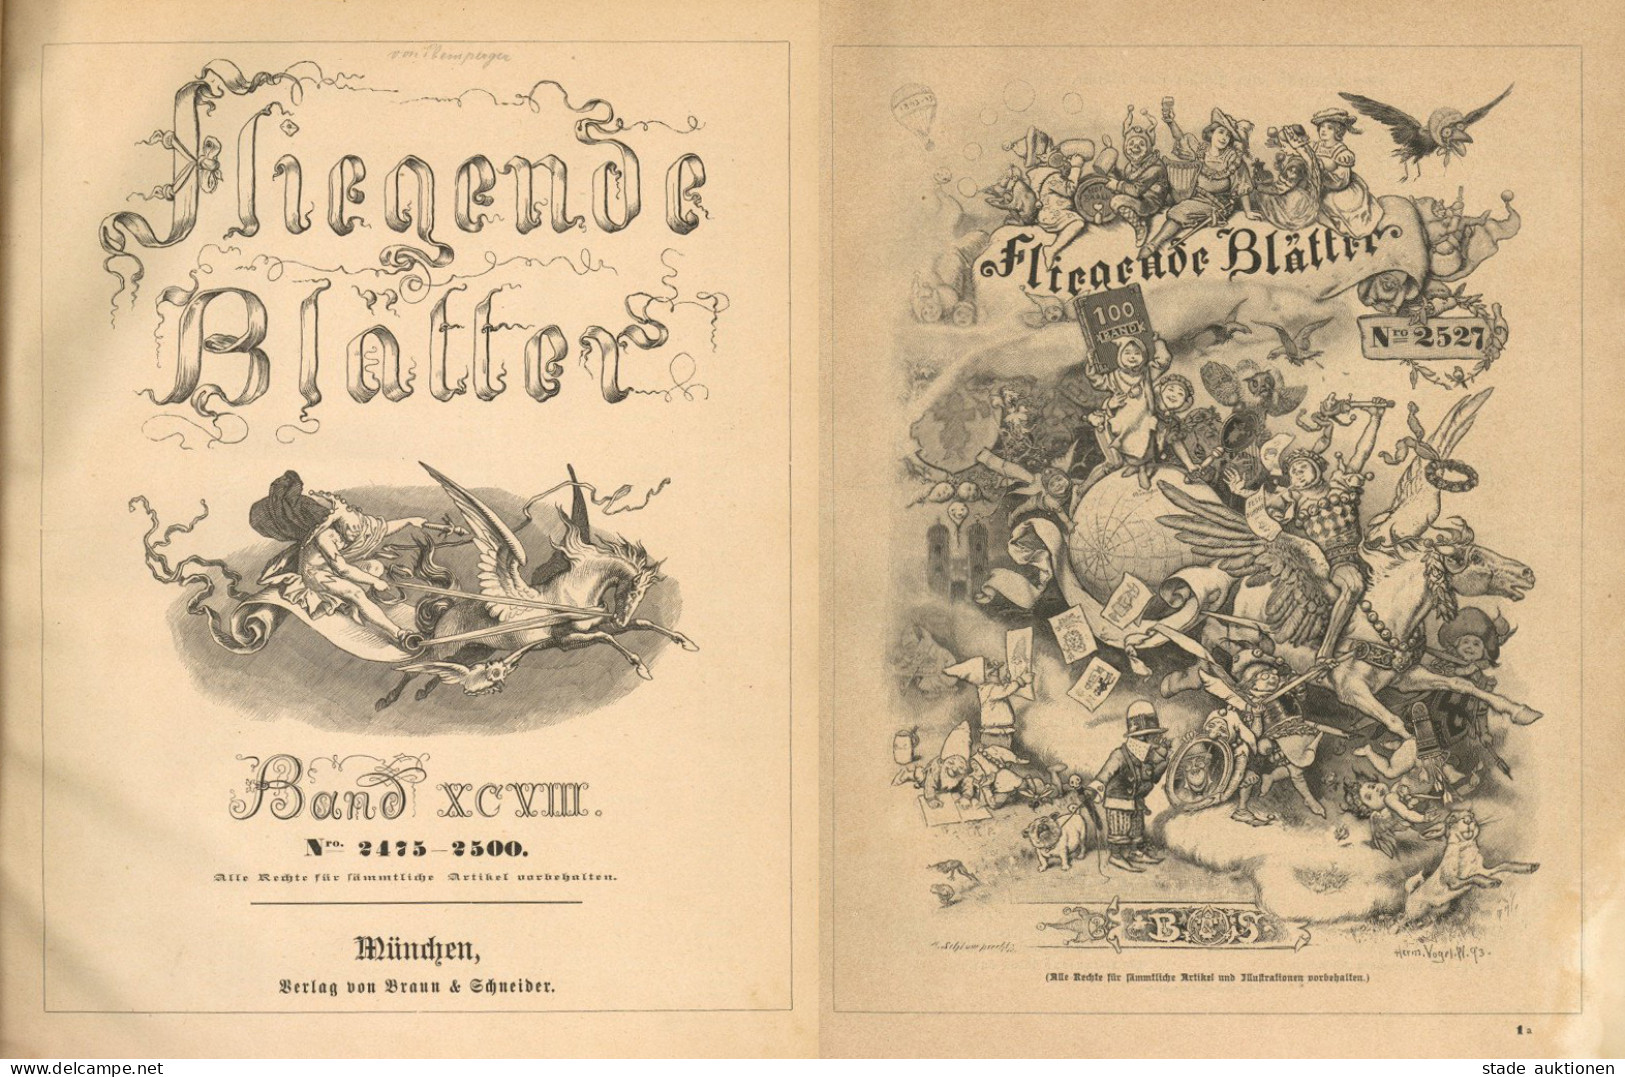 Verlag Fliegende Blätter 2 Bände 2475-2500 Und 2527-2552 1893/94, Verlag Braun Und Schneider München, 476 S. II - Unclassified